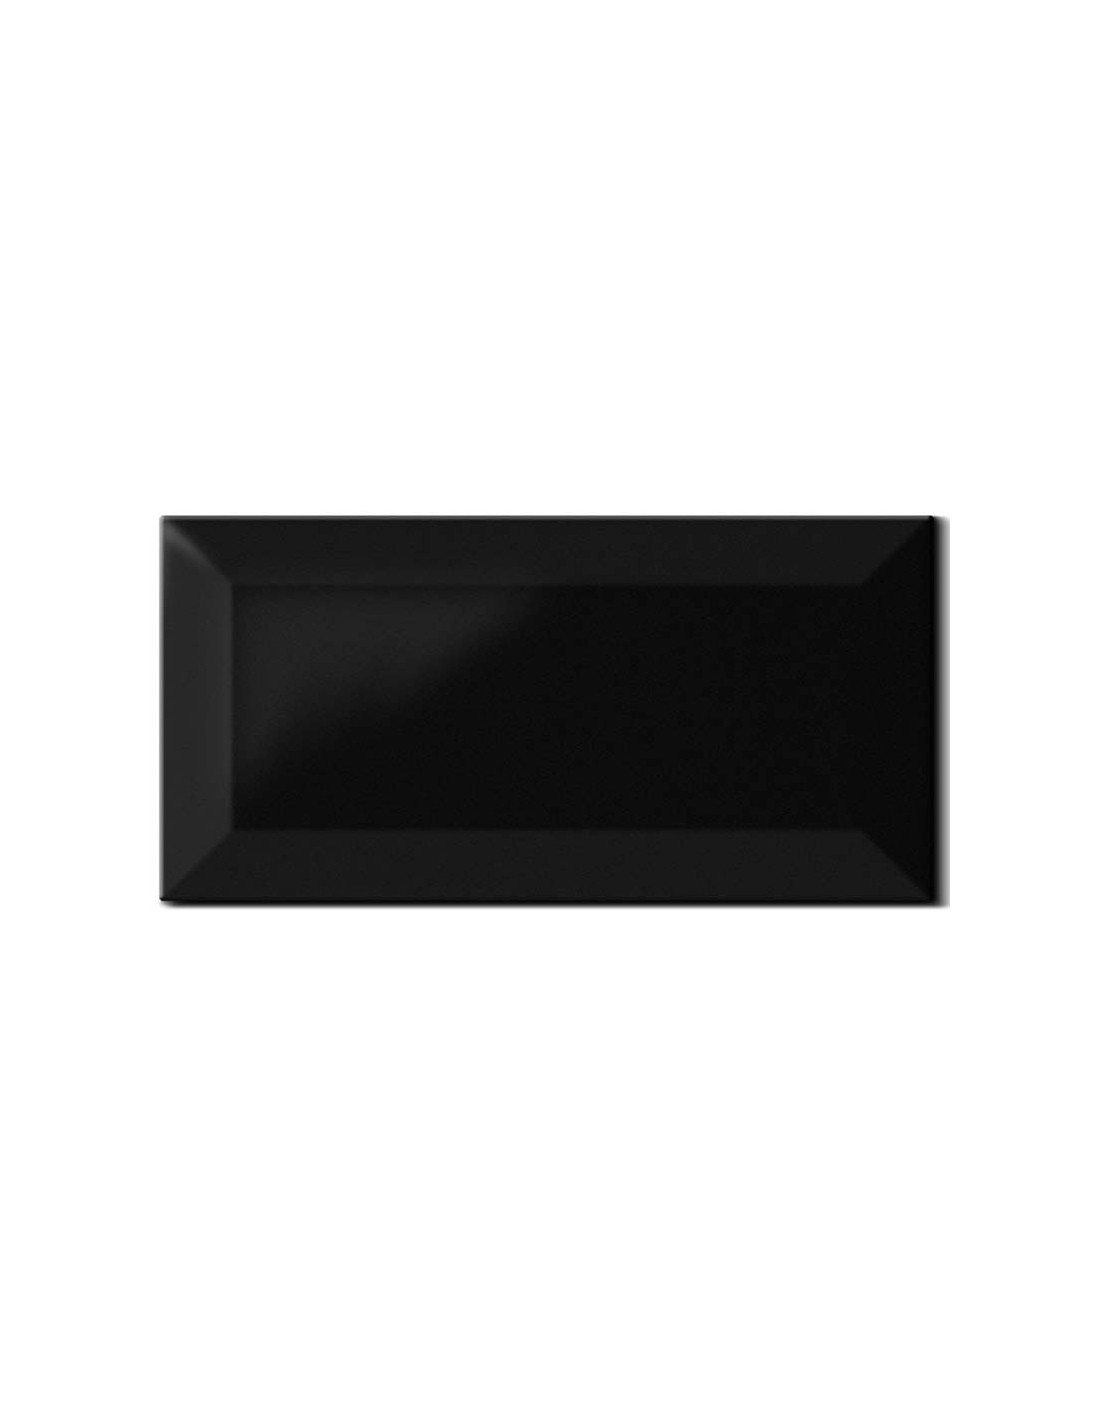 Carrelage métro Noir Brillant de 7,5x15x0,8 cm